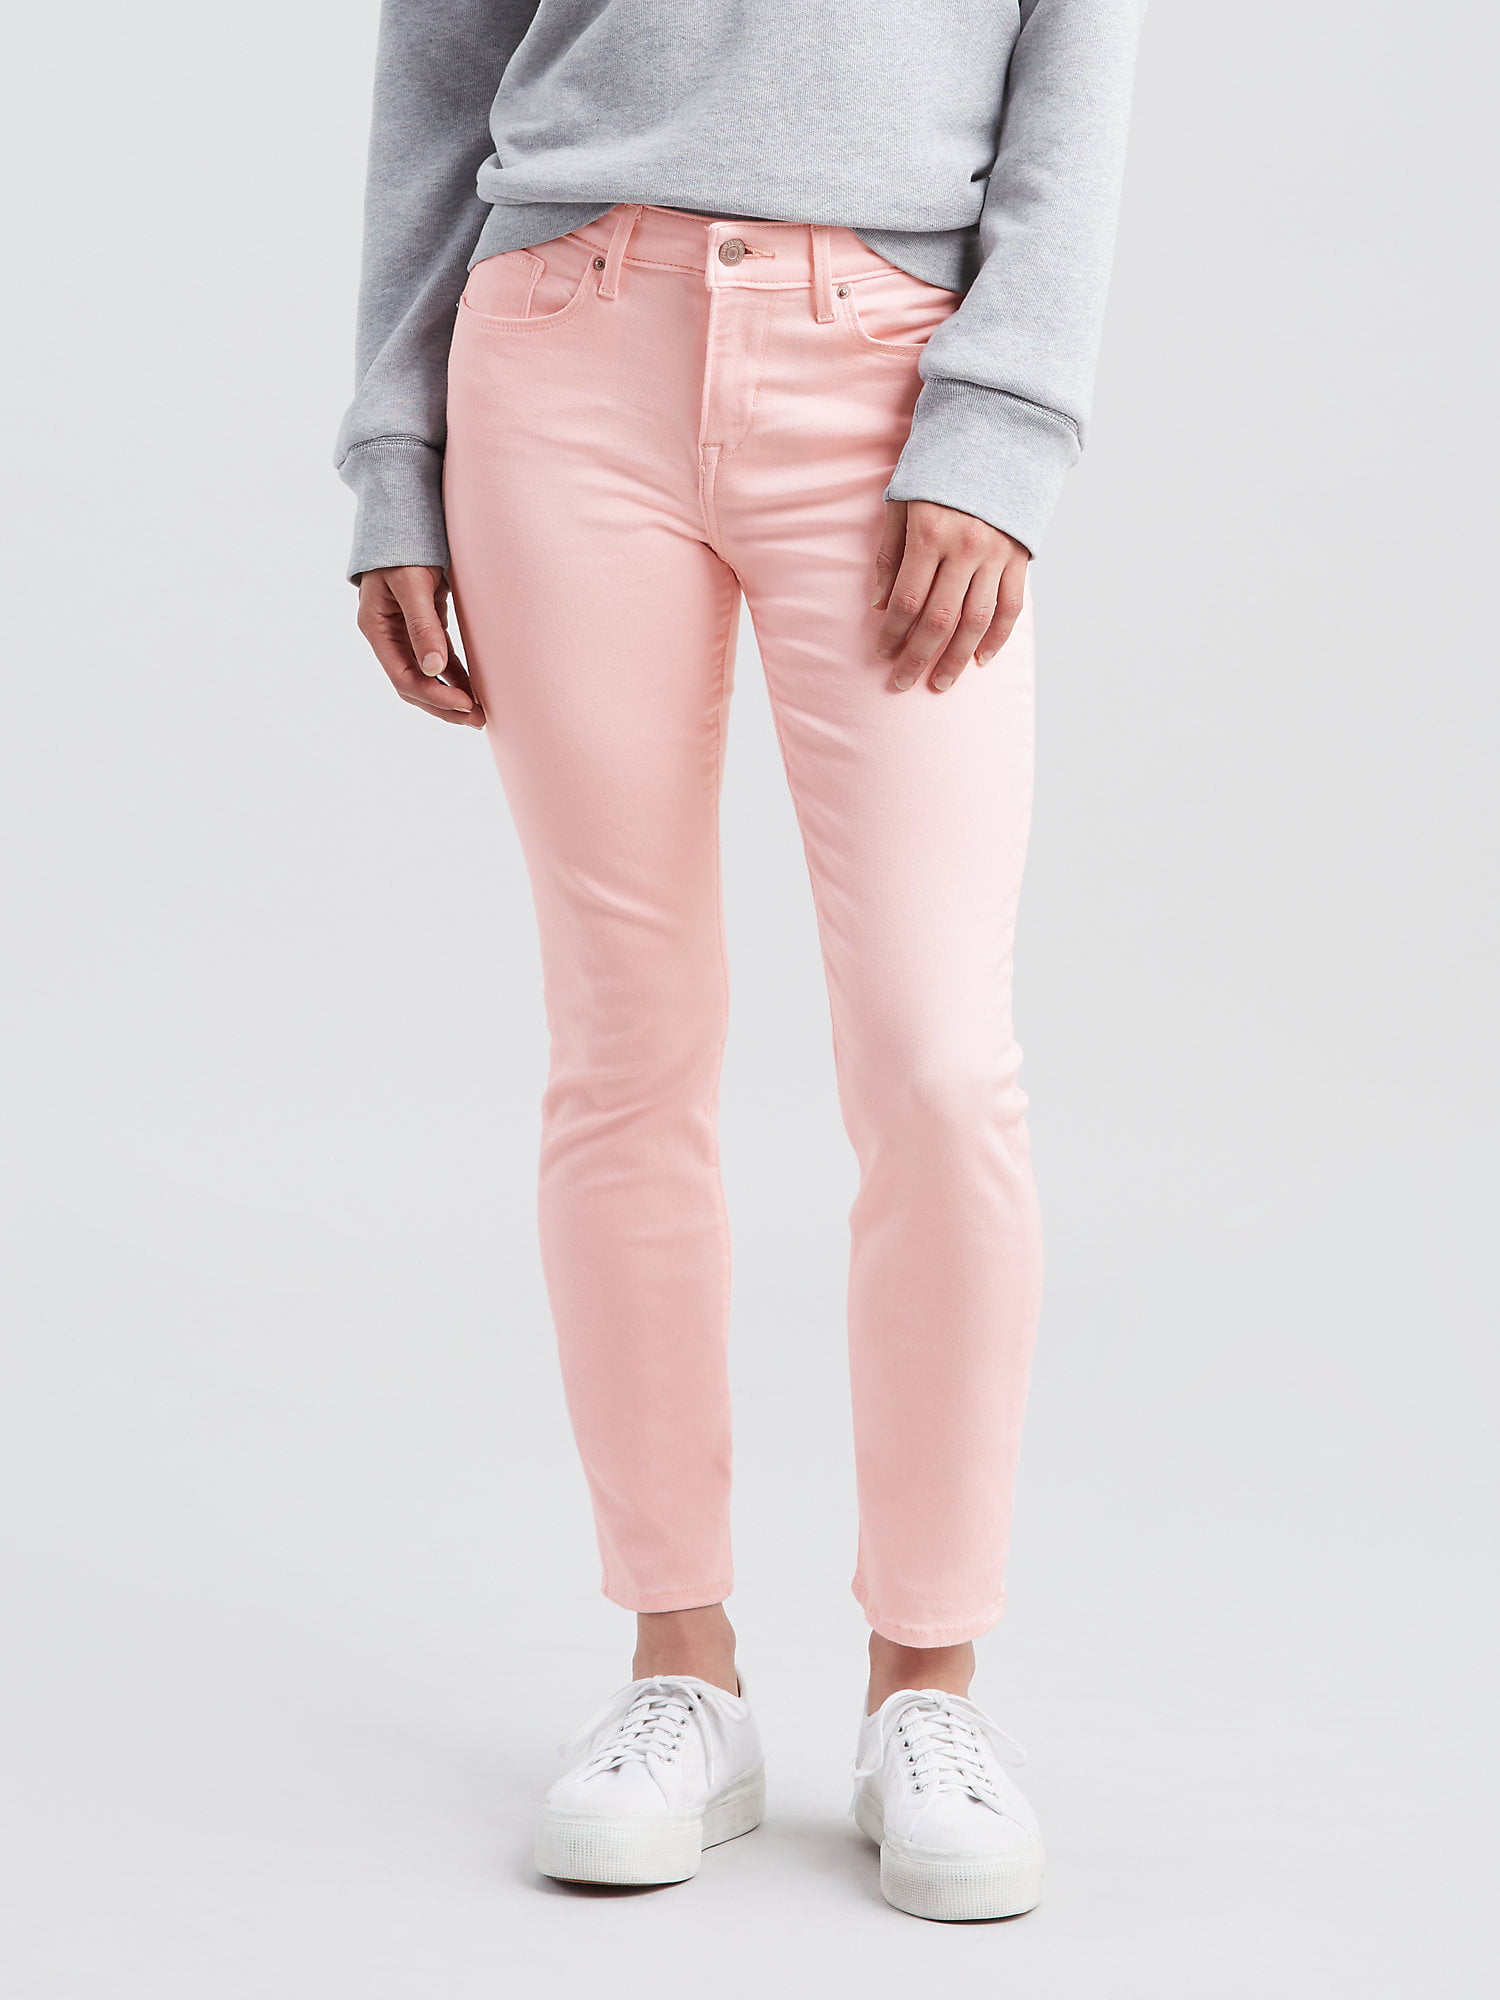 levis jeans pink